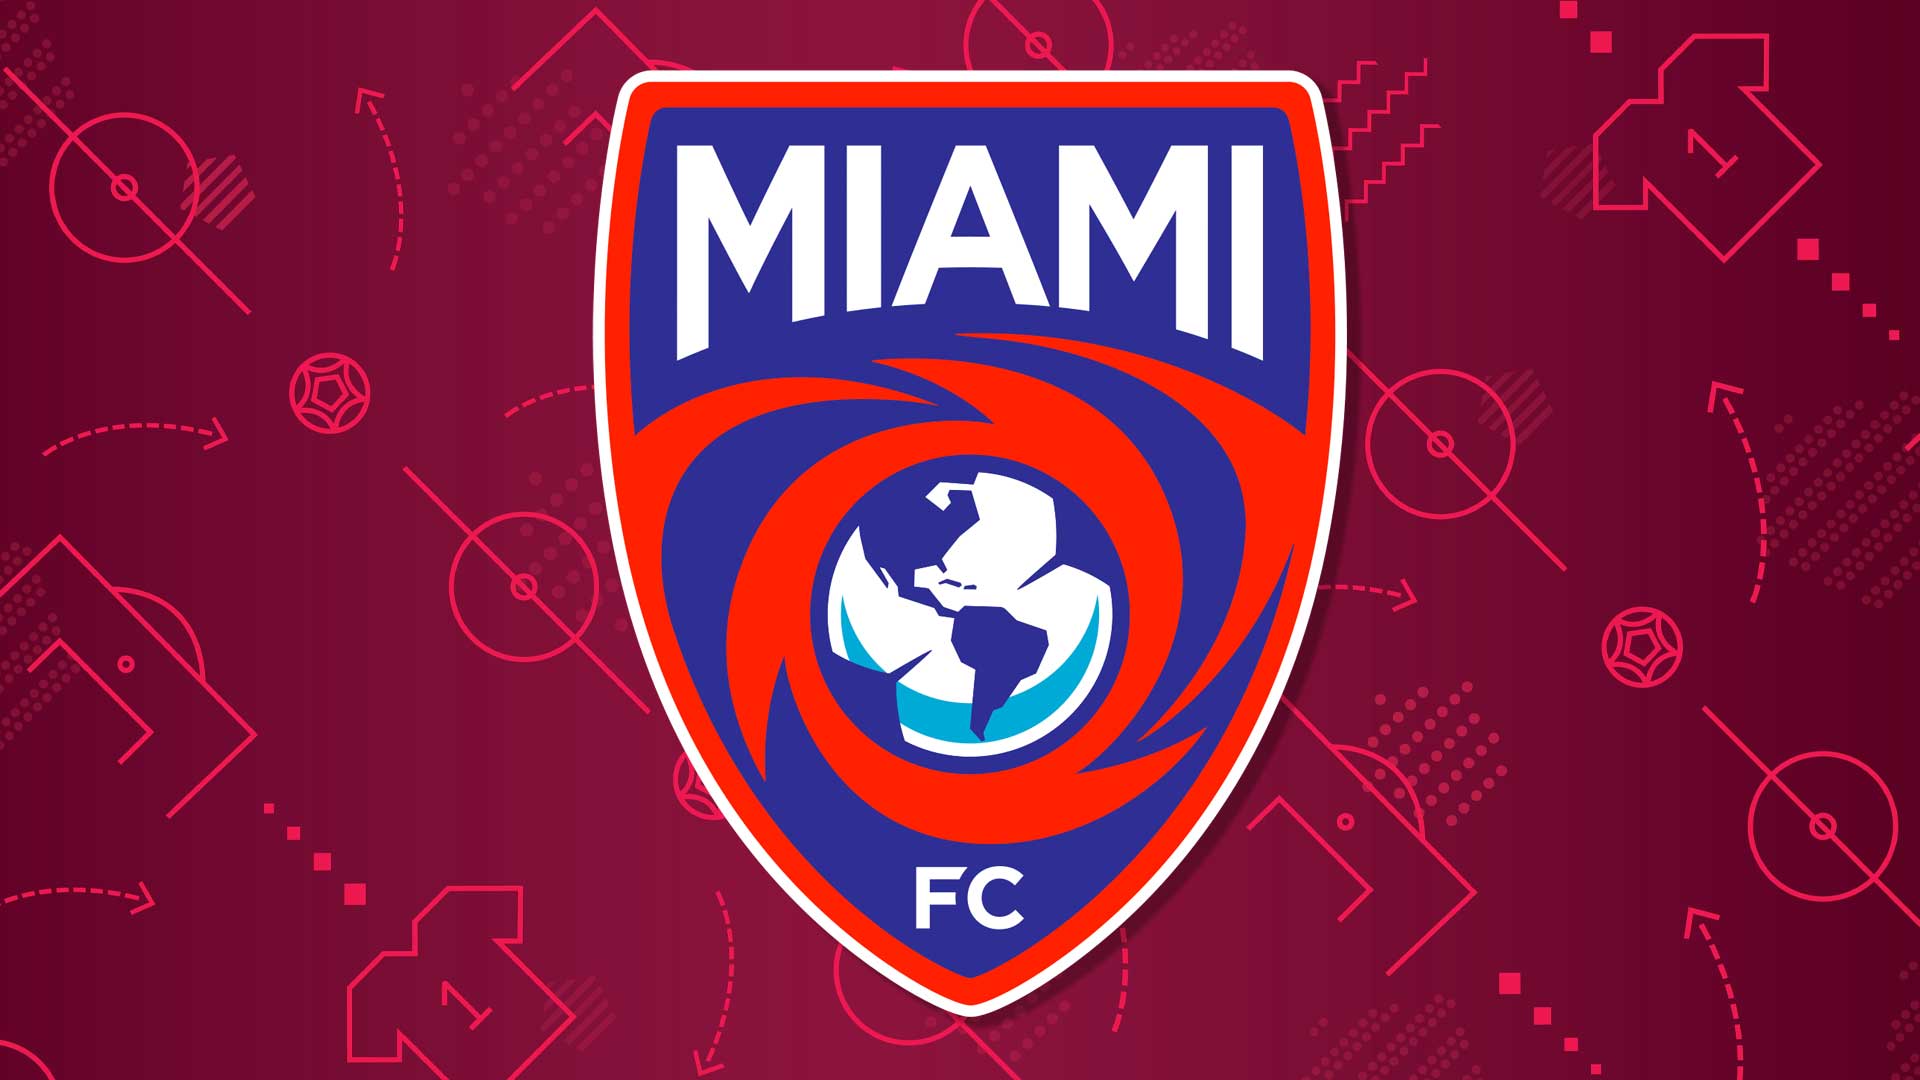 A Miami FC badge